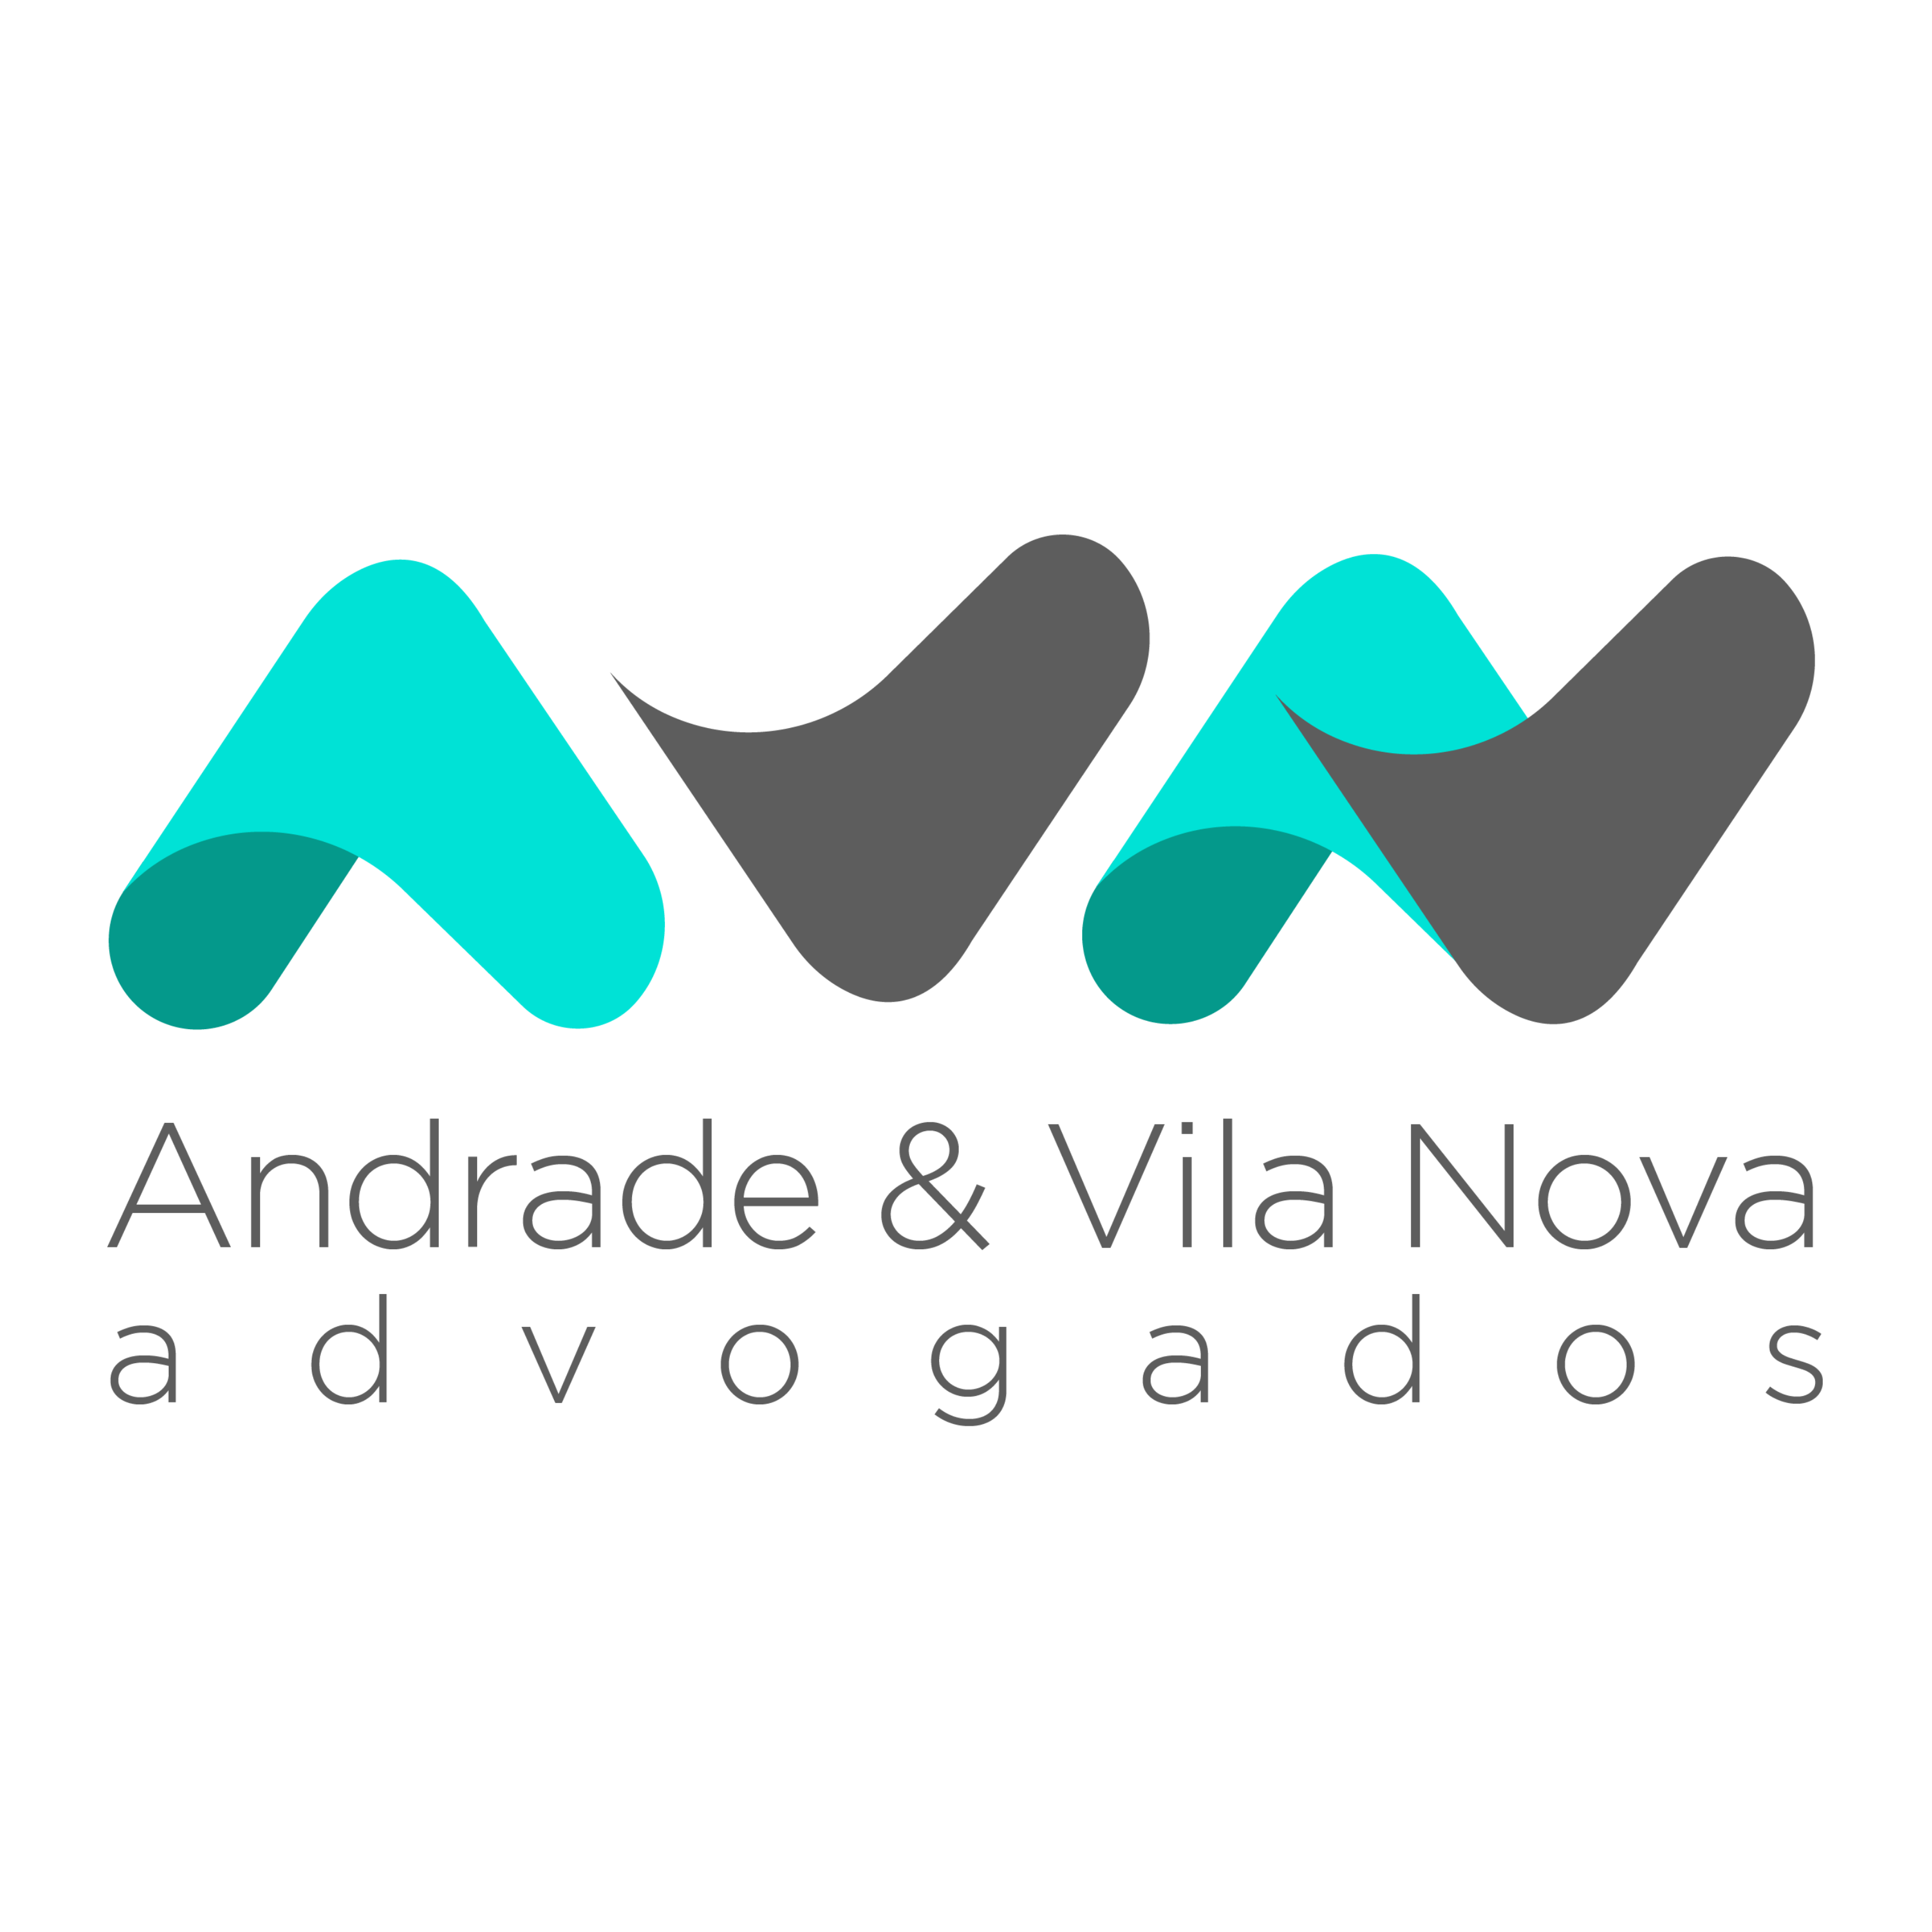 Andrade & Vila Nova Advogados